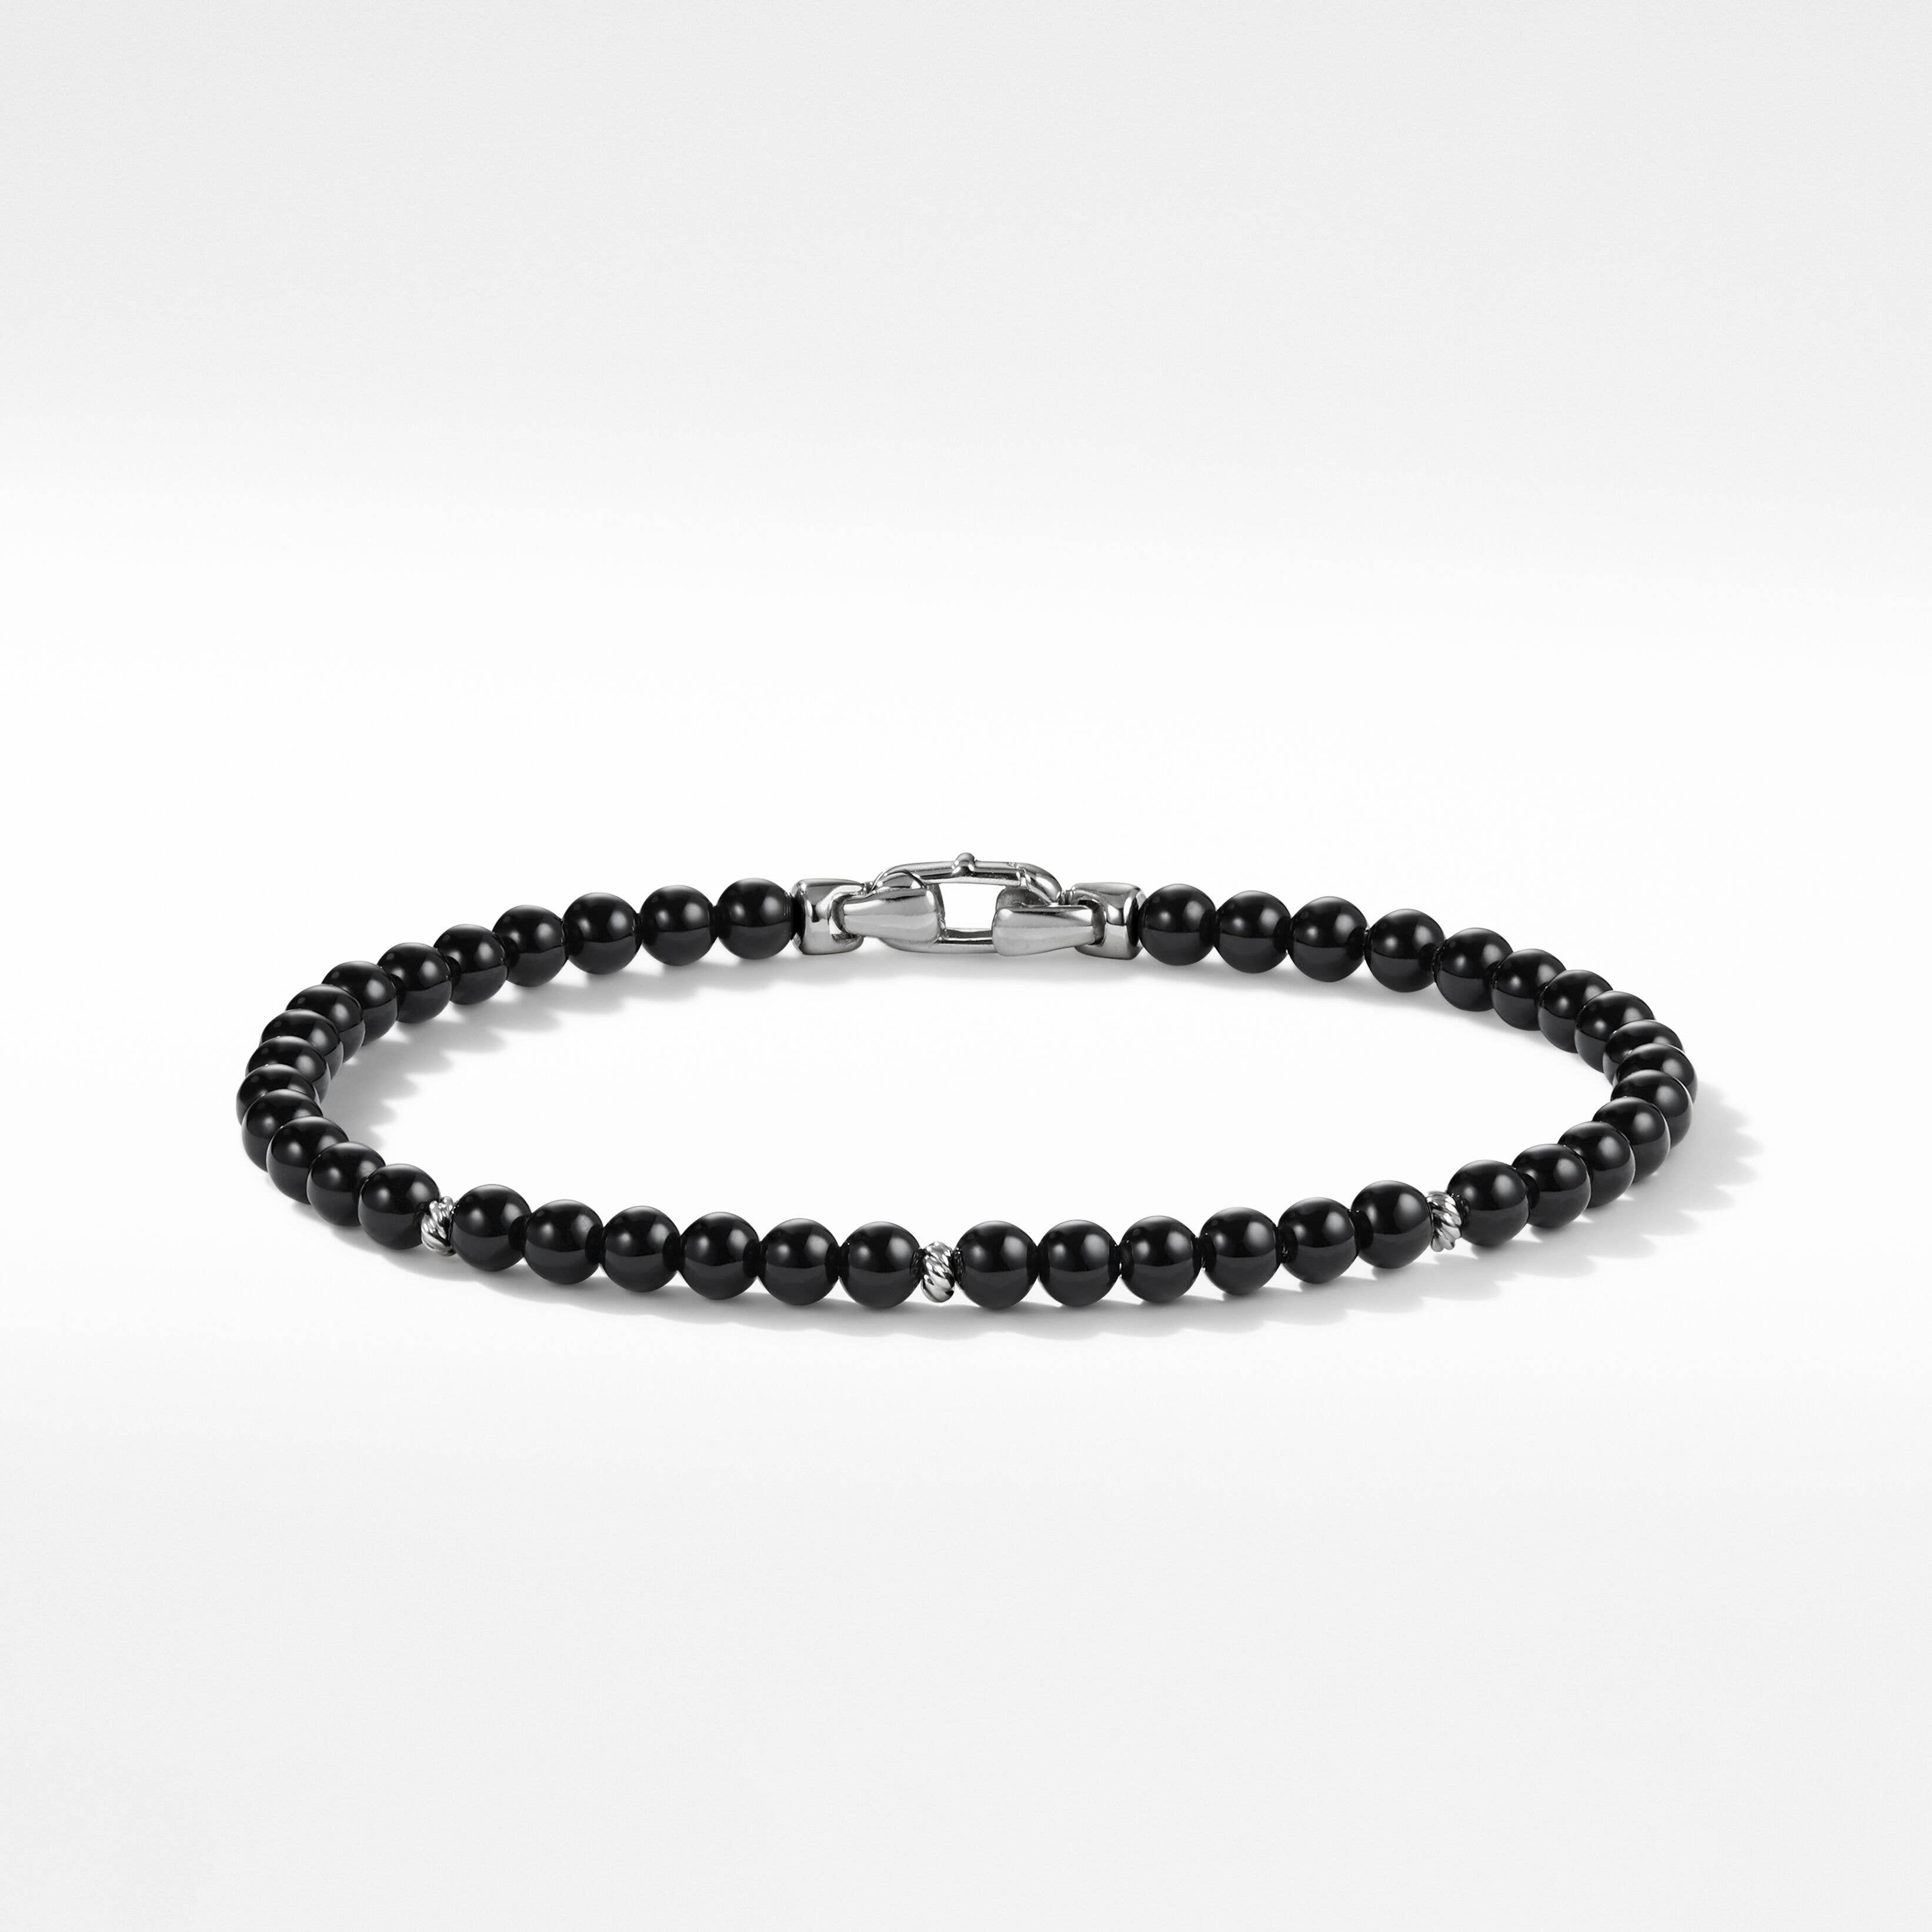 Bijoux Spiritual Beads Bracelet with Black Onyx